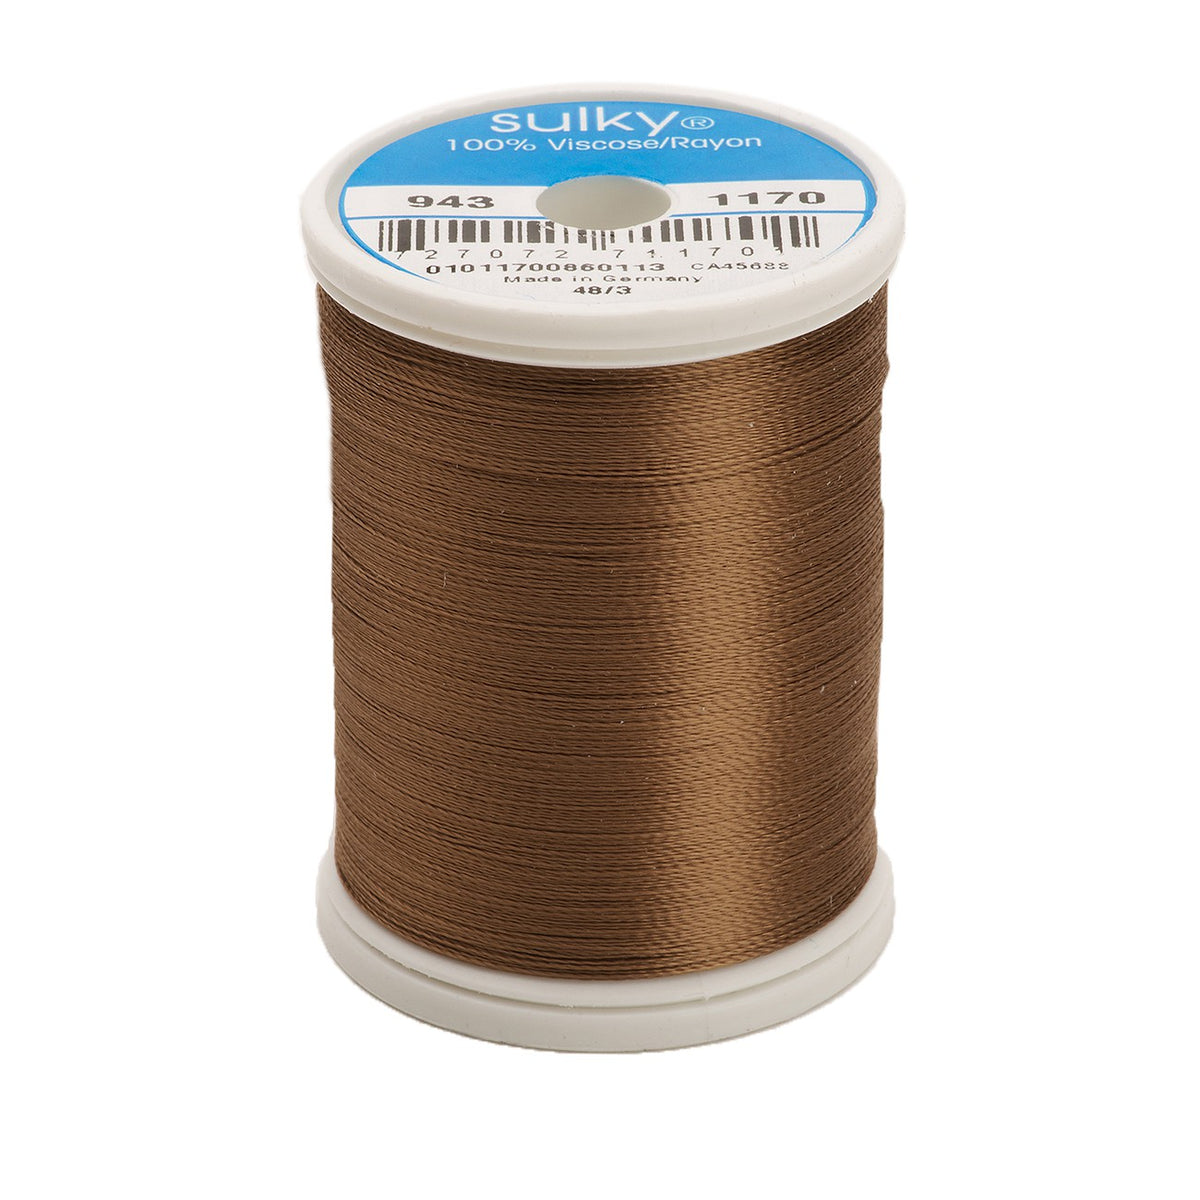 Sulky Rayon 40wt Thread 1170 Light Brown  850yd Spool